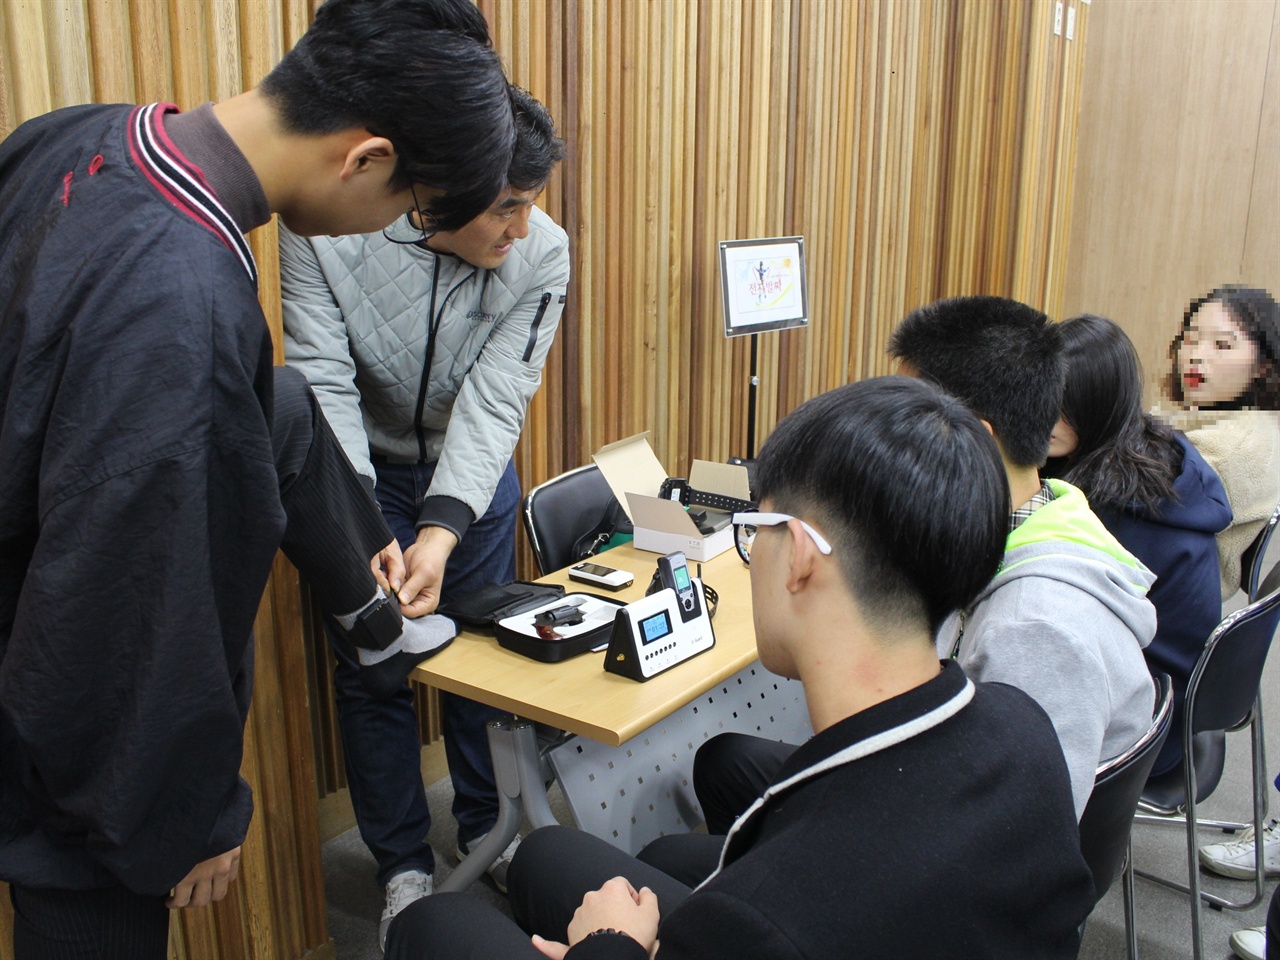 참여한 학생 1명이 전자발찌를 직접 착용해 보고 있다. 